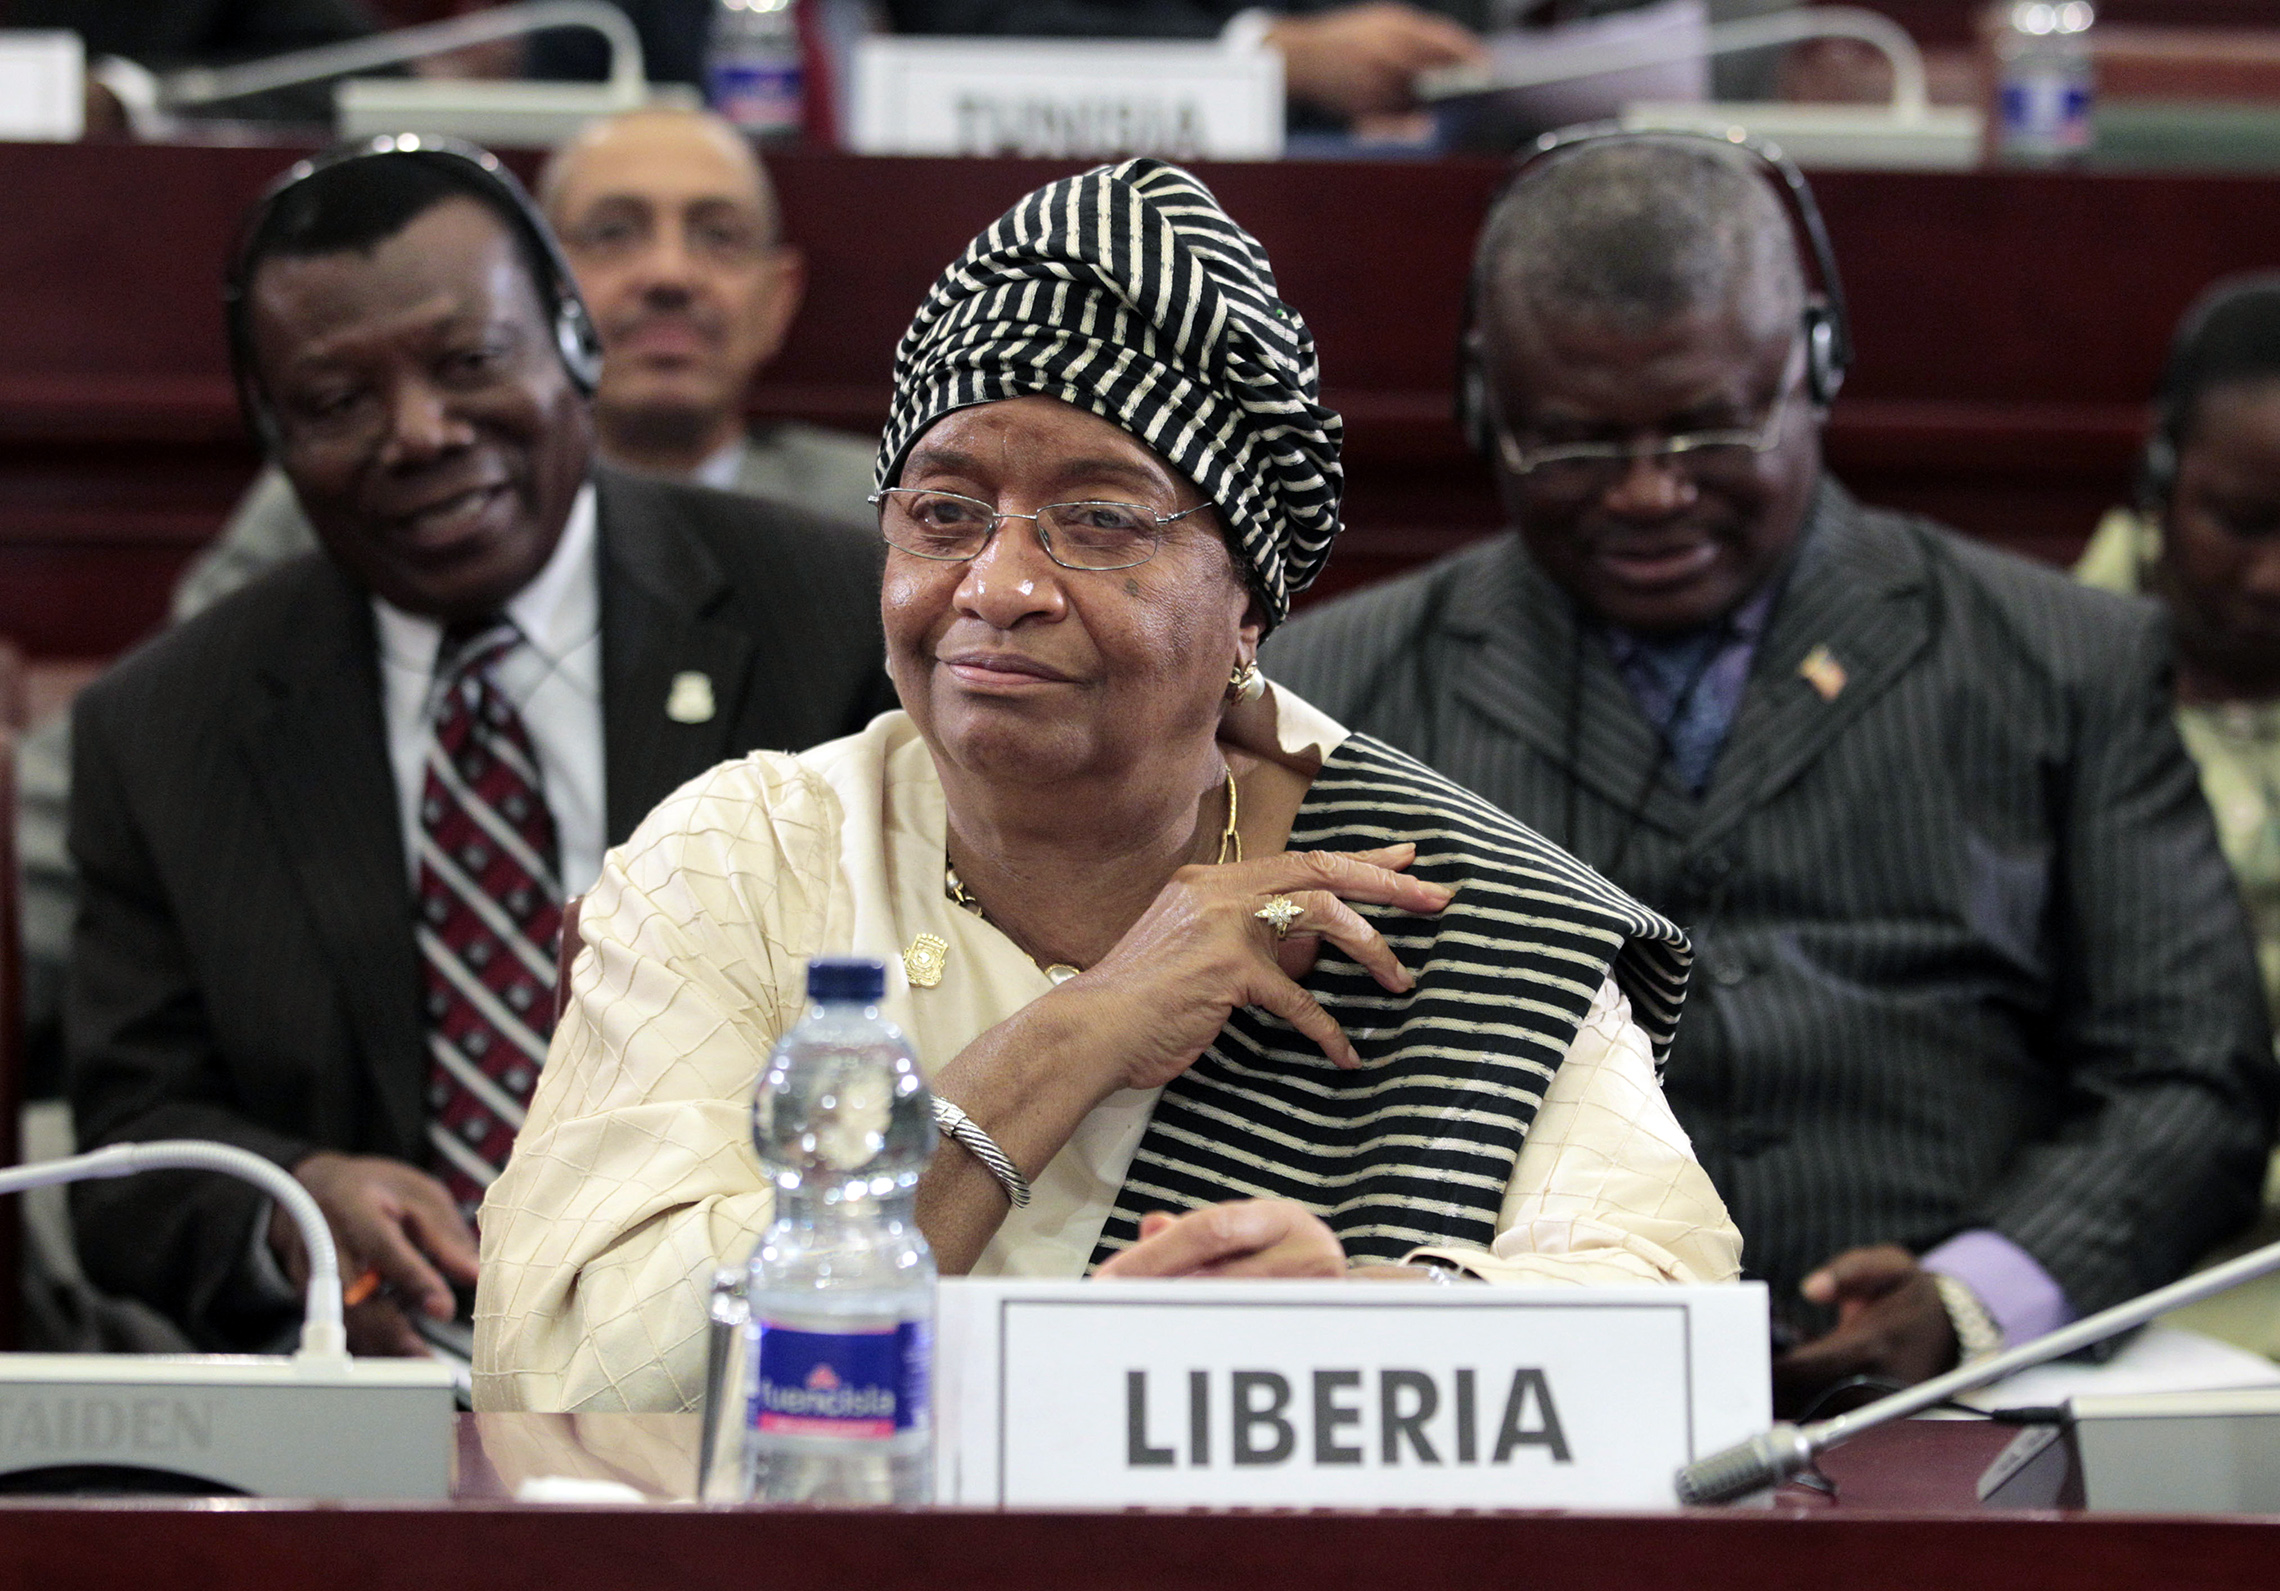 Liberias President Ellen Johnson Sirleaf, sett under avslutningssesjonen av Det 17.Toppmøtet I Den Afrikanske Union I Malabo, Ekvatorial-Guinea, 2011. Dagens sesjon ble dominert av debatt om uroen I Libya, Hvor Muammar Gaddafi klamret seg usikkert til makten i møte med et folkelig opprør mot hans 42-årige styre. (AP Images/Rebecca Blackwell)'s session was dominated by debate over the turmoil in Libya, where Moammar Gadhafi clung precariously to power in the face of a popular uprising against his 42-year rule. (AP Images/Rebecca Blackwell)